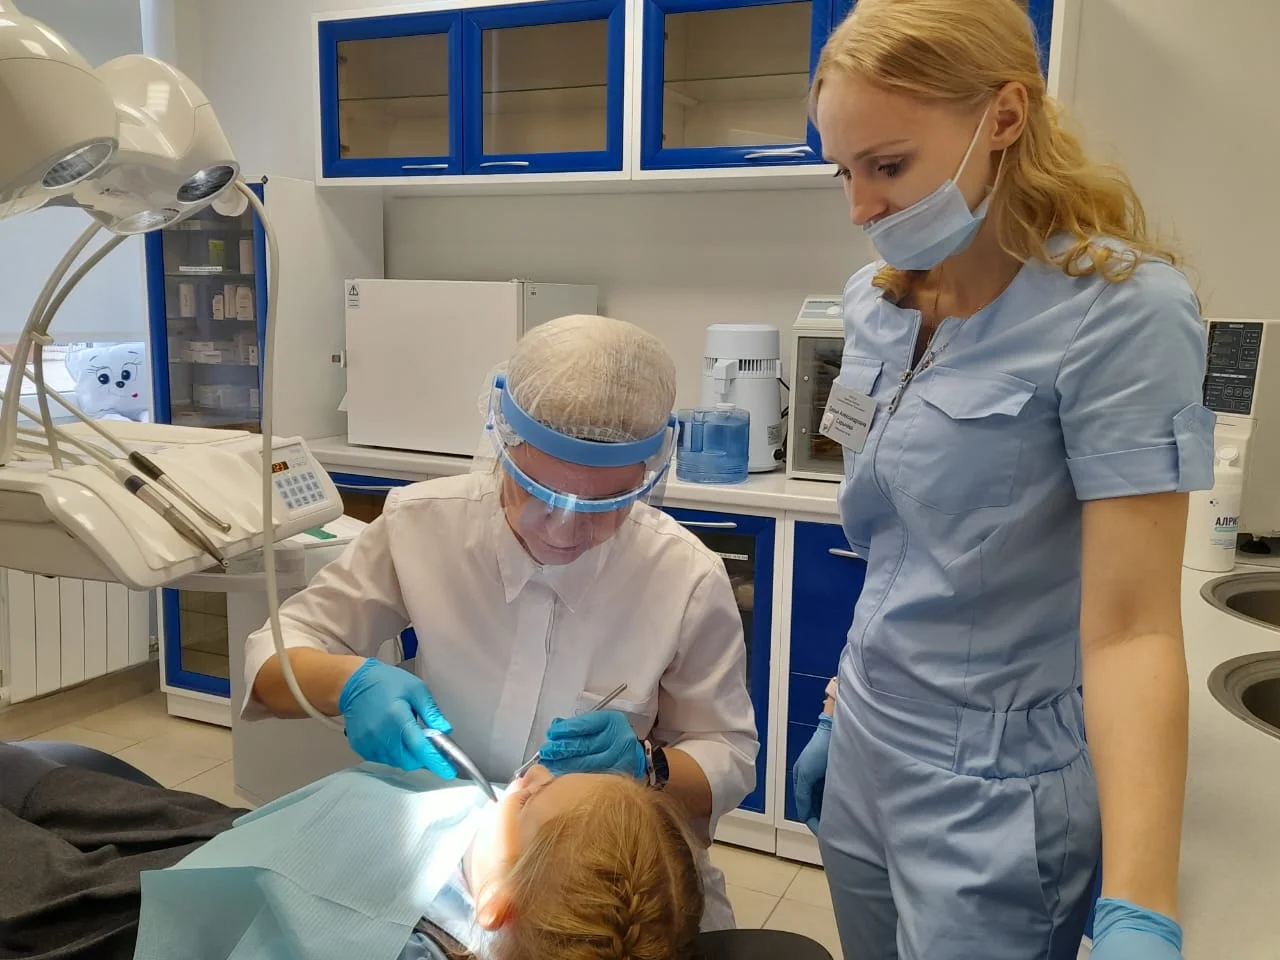 За первый год работы в стоматологическом кабинете школы № 58 отмечено более двух тысяч посещений